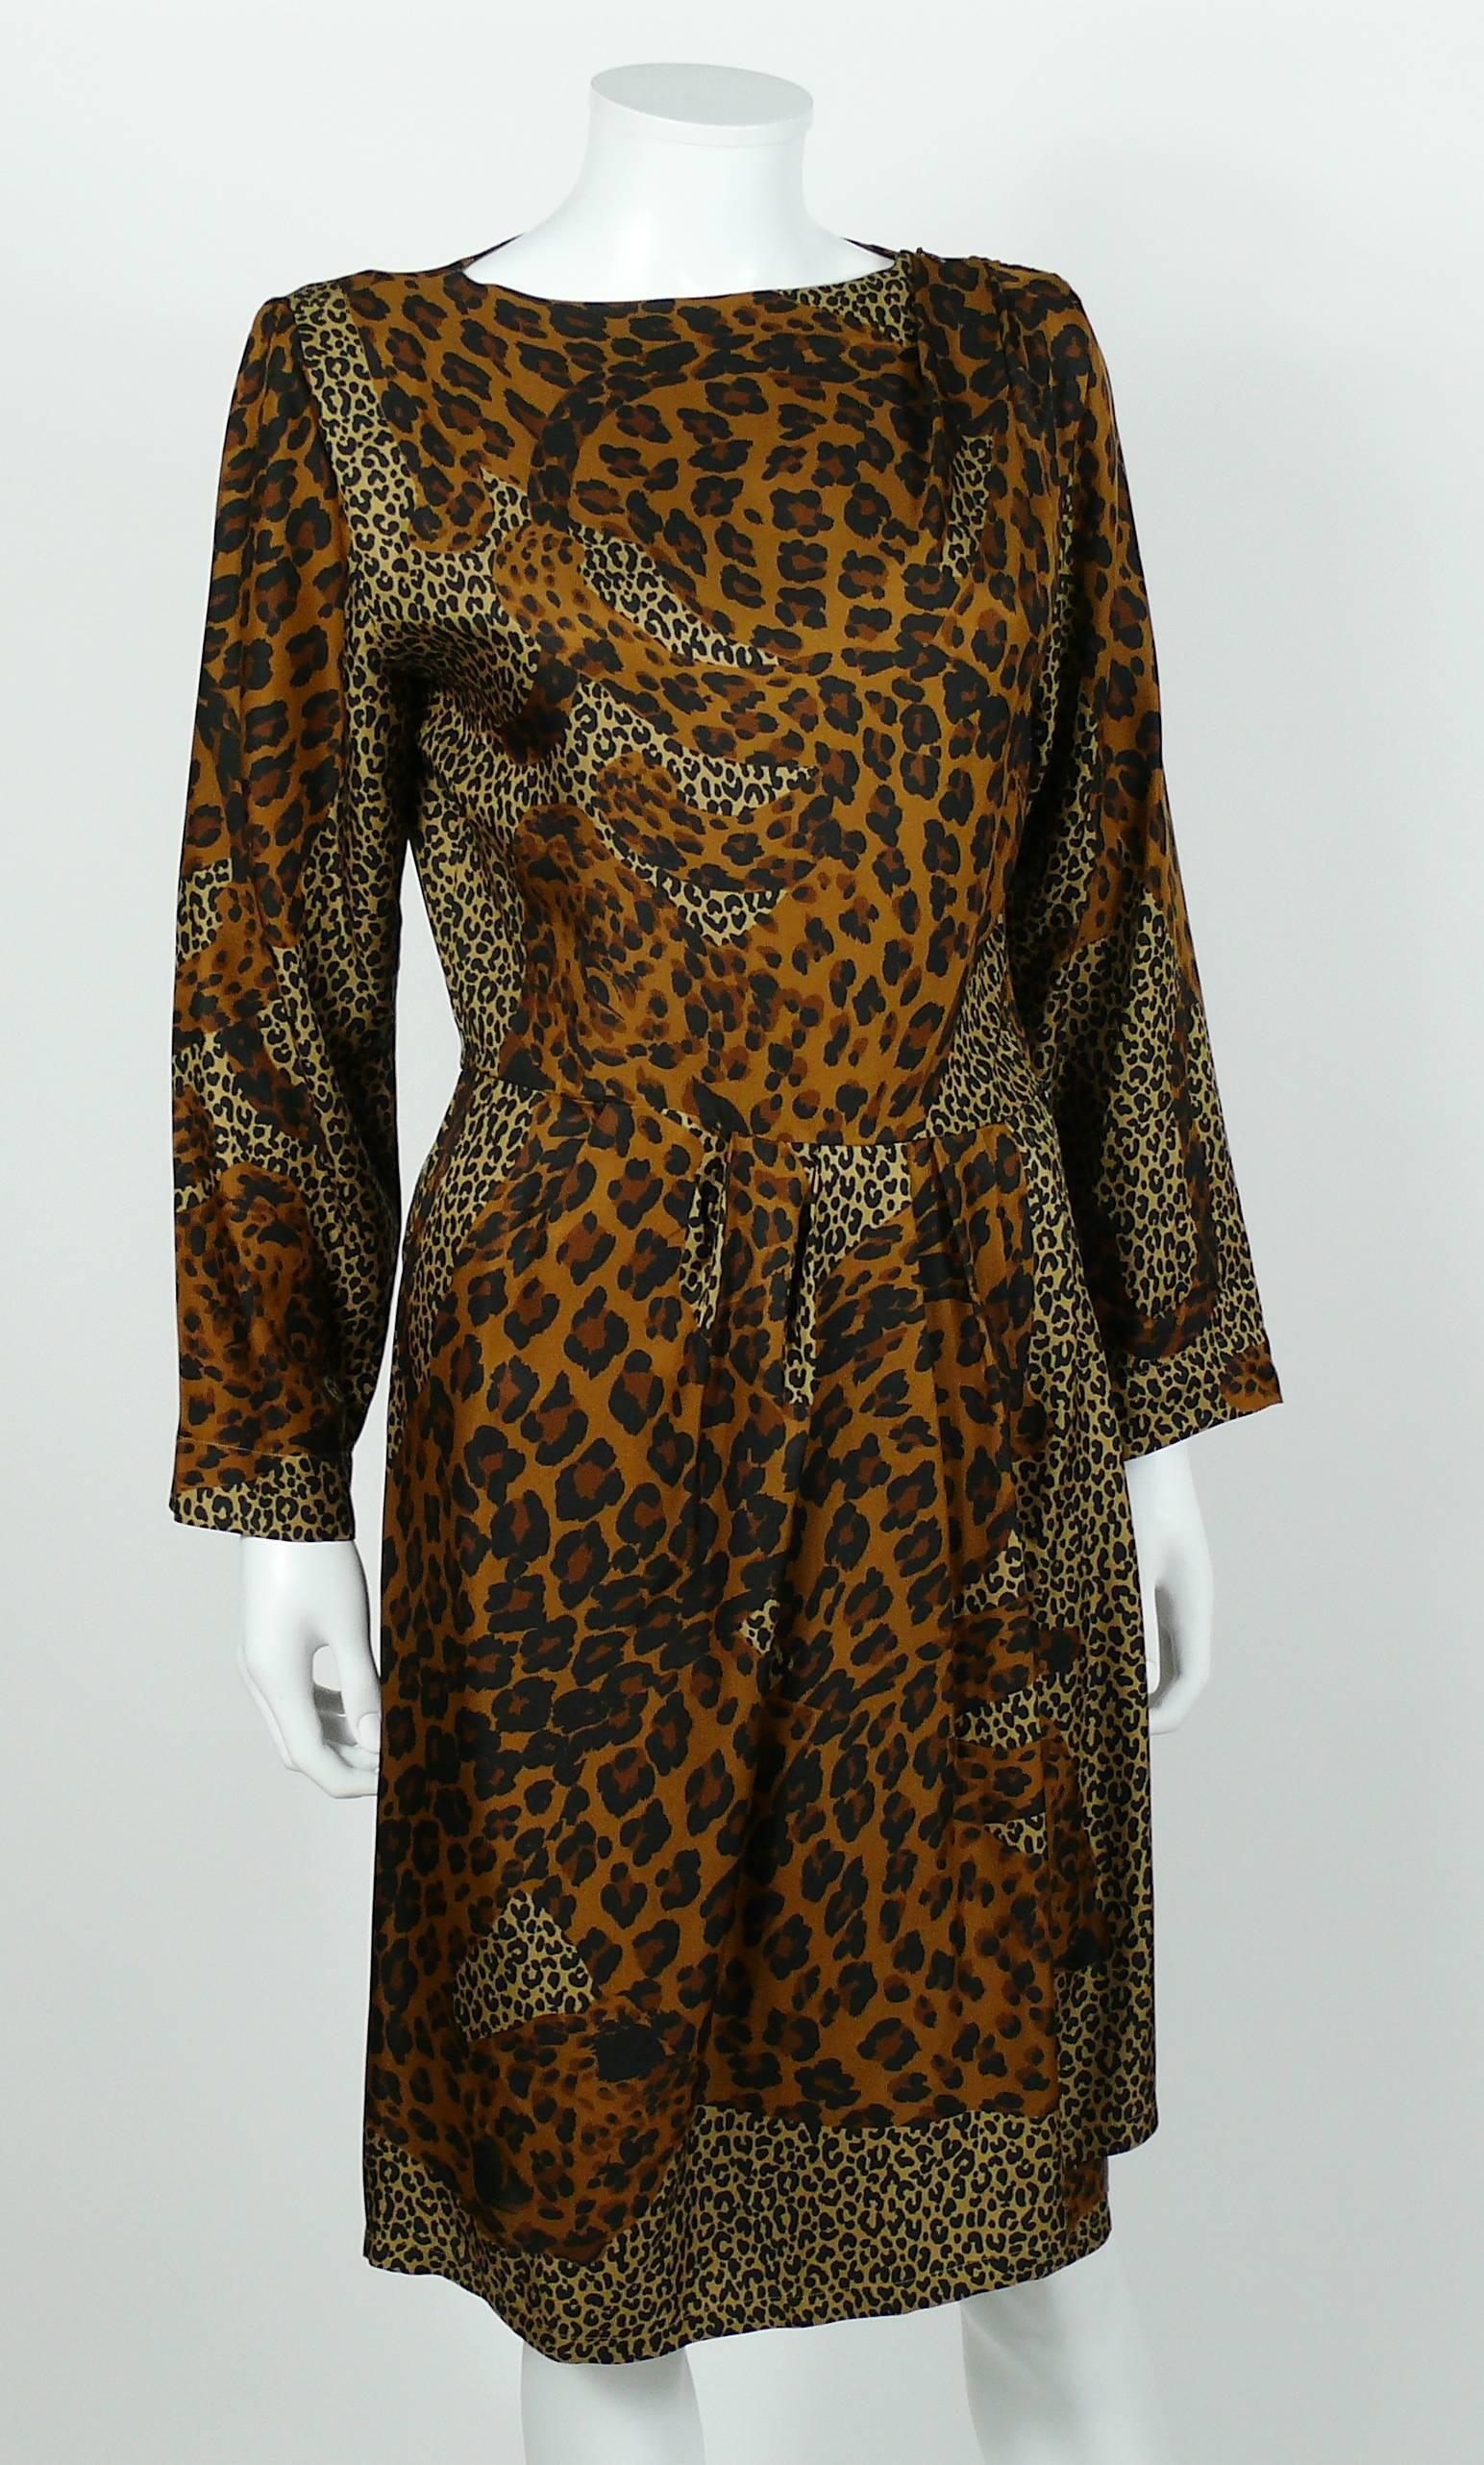 ysl leopard dress